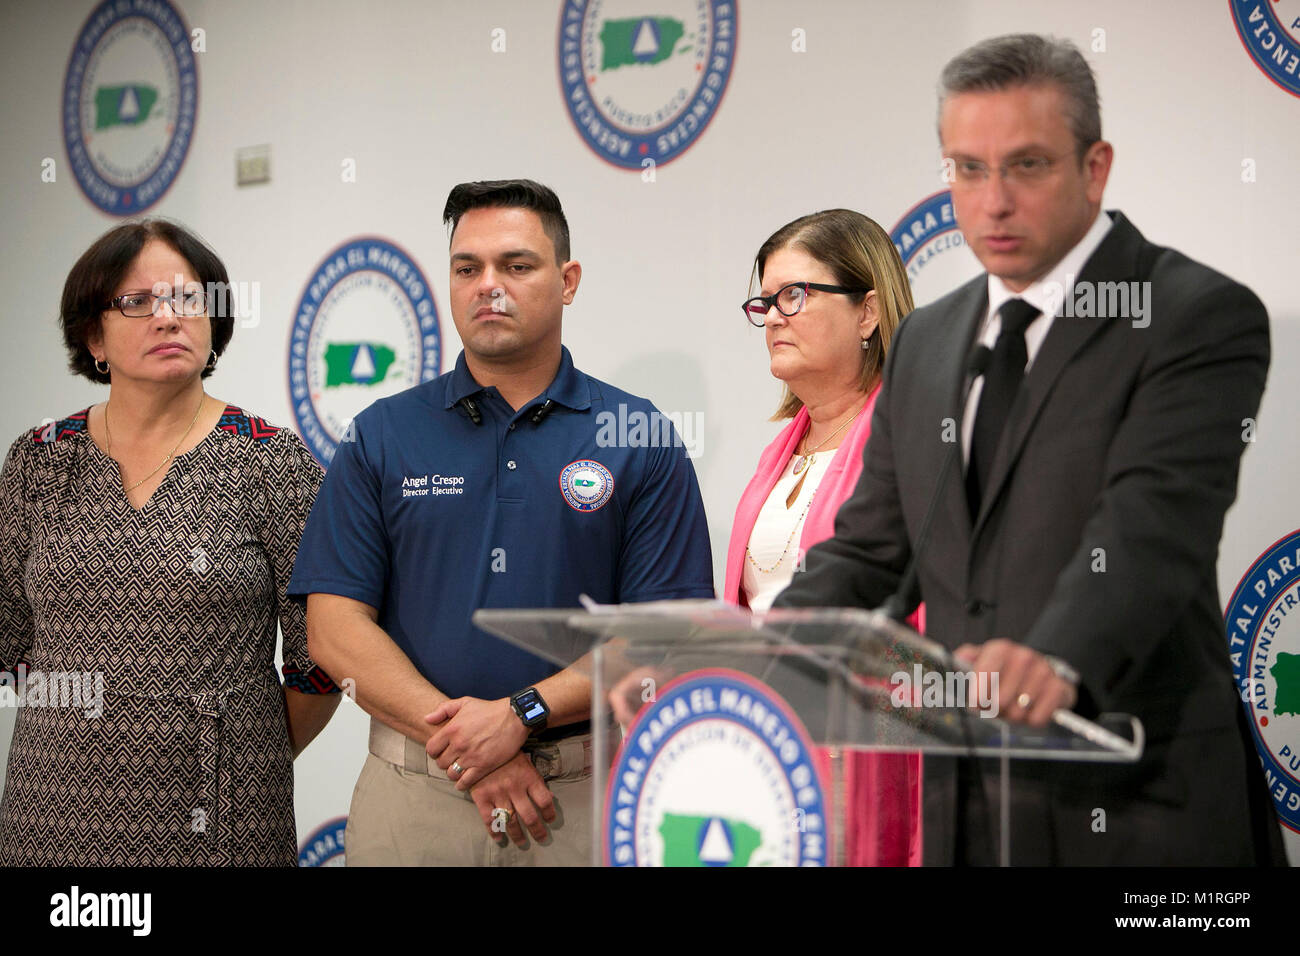 22 julio 2016. Agencia Estatal para Manejo de Emergencias, San Juan El  Gobernador Alejandro Garcia Padilla hace el anuncio de autorizar el uso de  Bti en vez del Naled, y que el